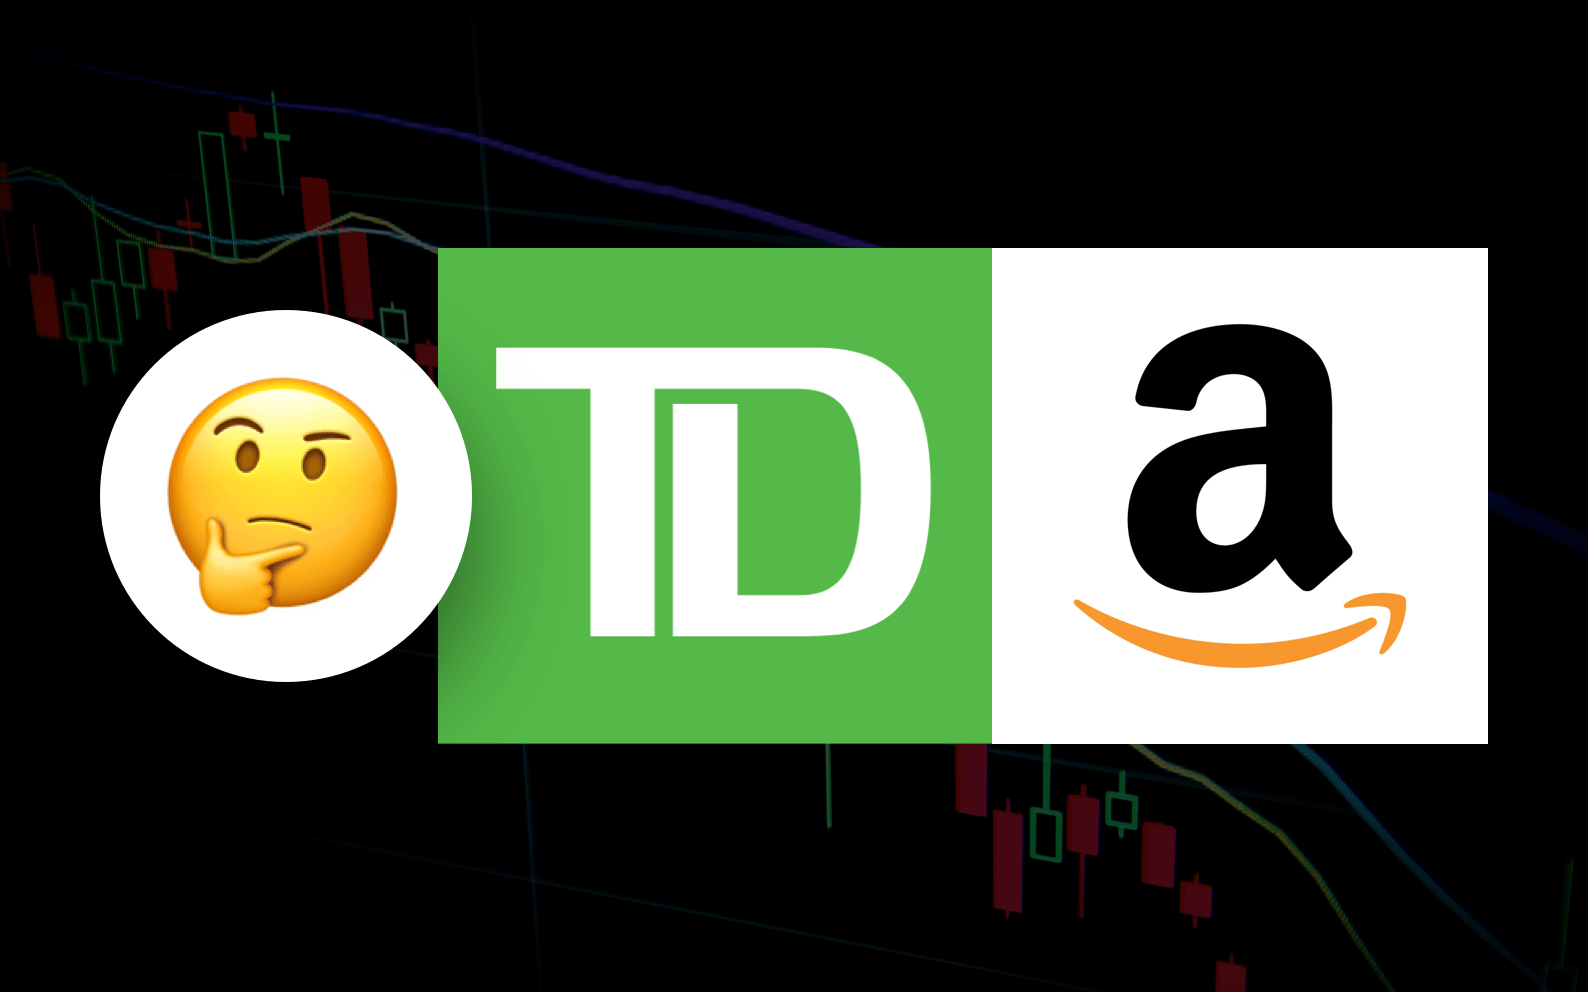 TD and Amazon: Buy on Weakness?